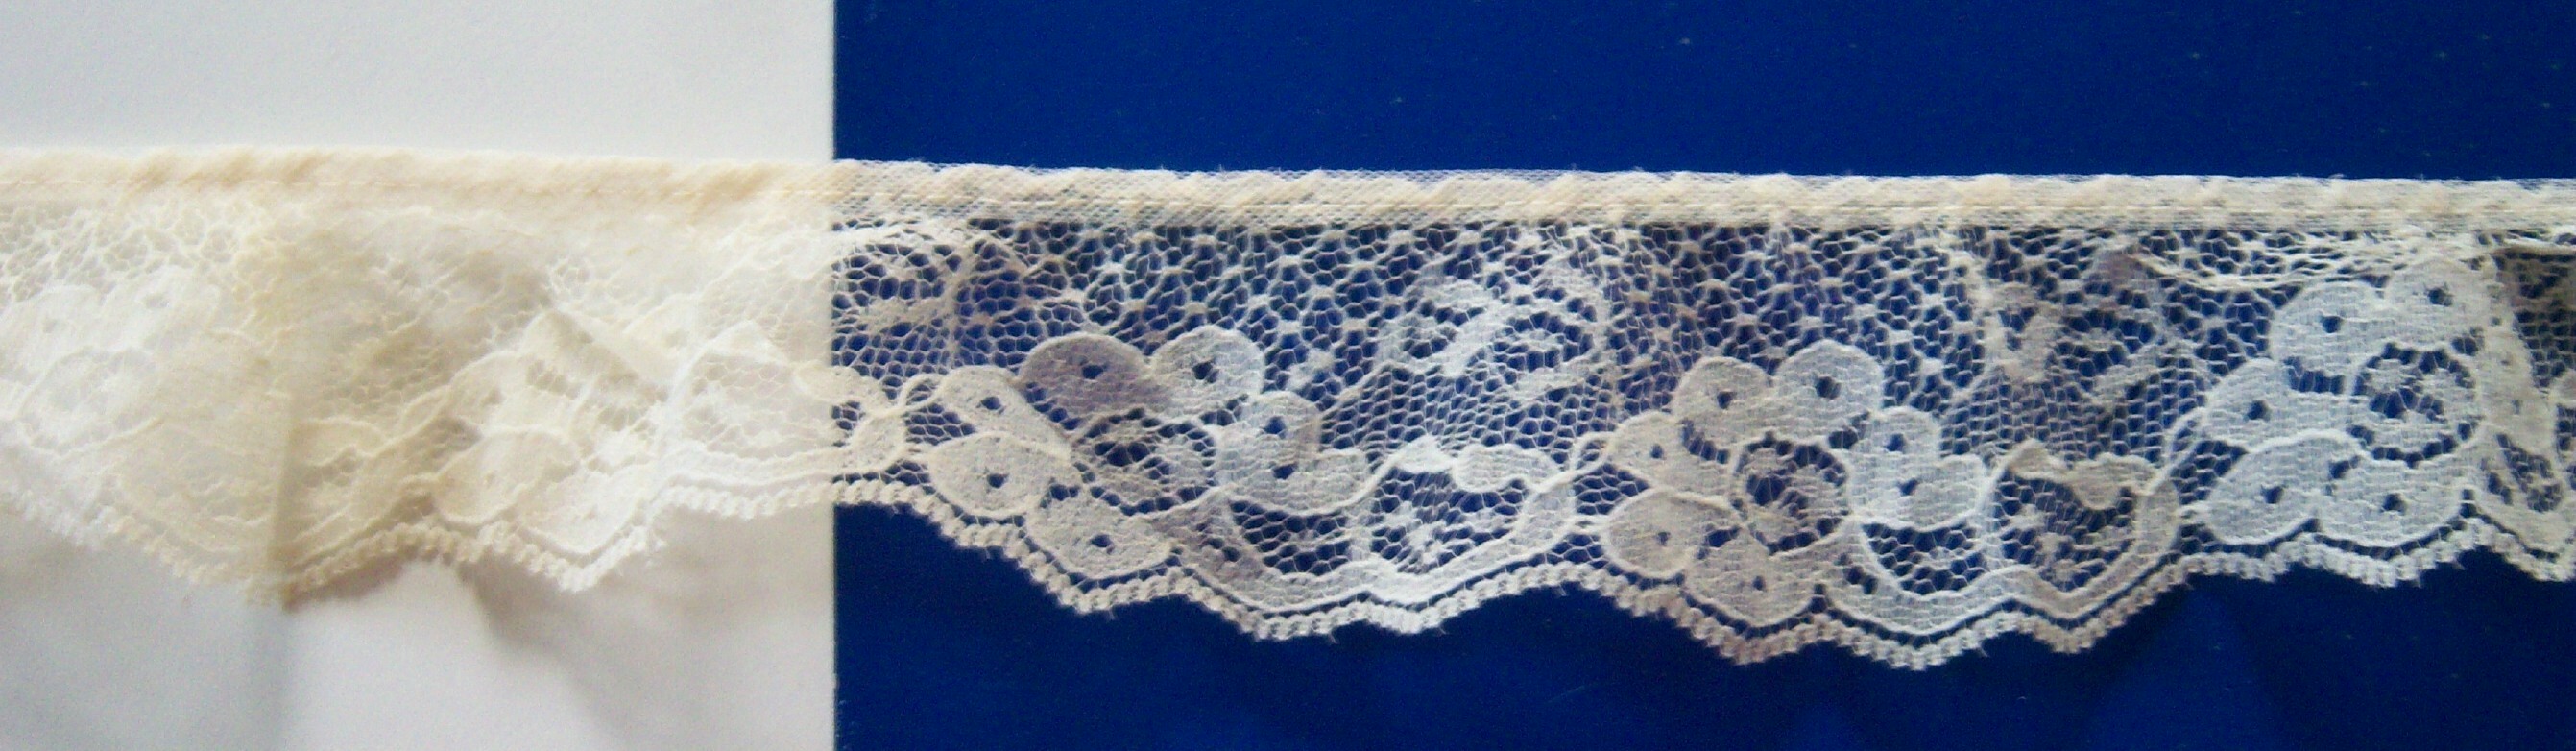 Ivory 1 3/4" Gathered Lace